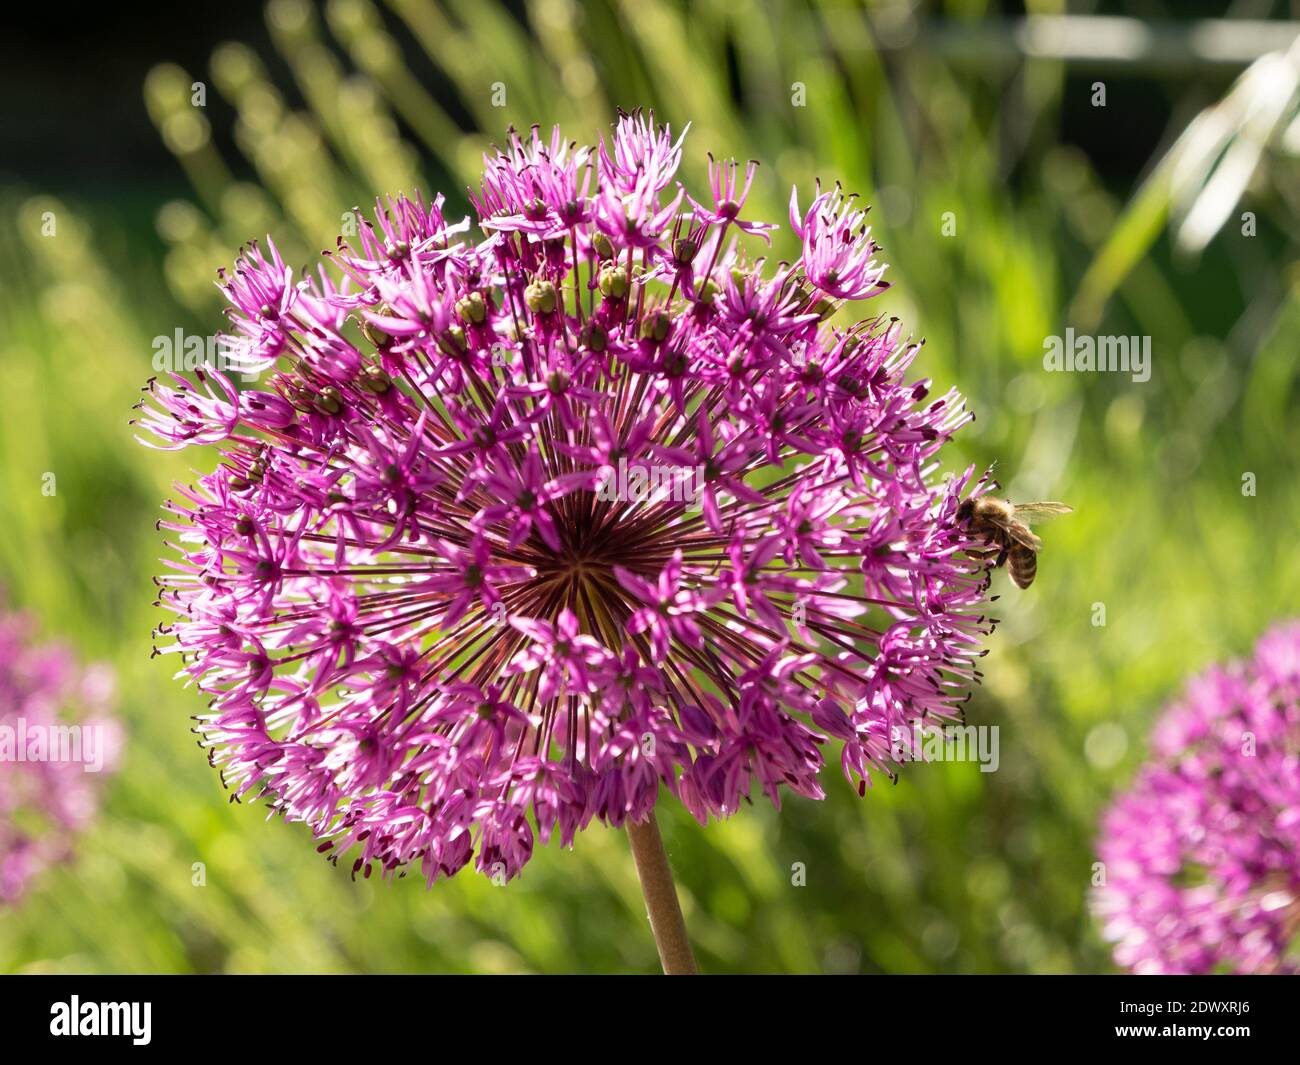 Allium Blume Nahaufnahme mit einer Bee bestäuben. Unscharfer Hintergrund. Stockfoto